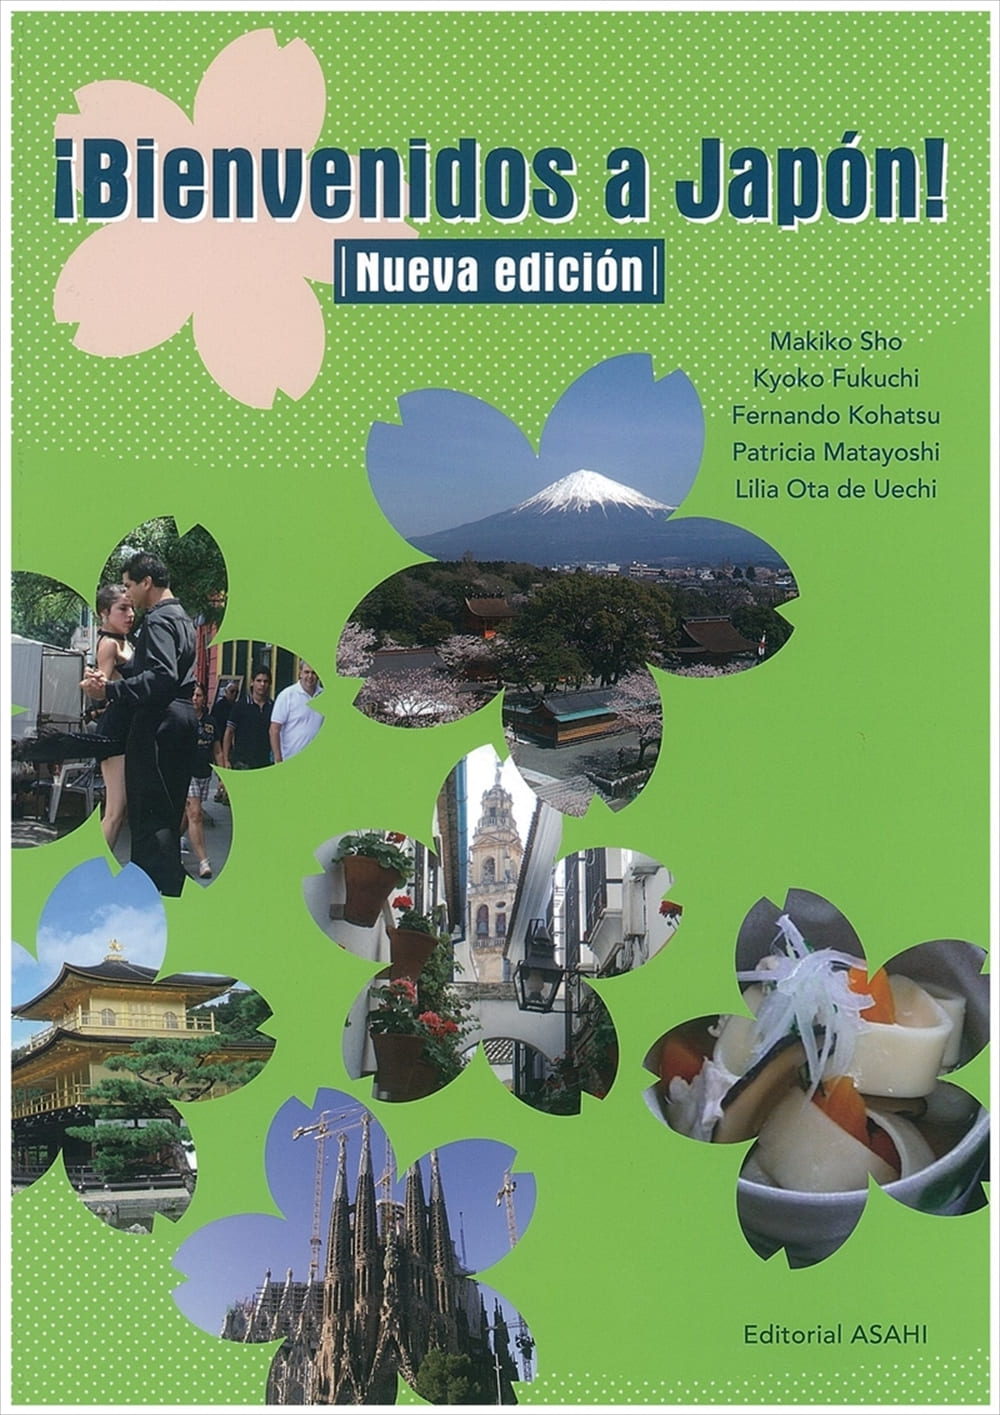 ディエゴと日本再発見 新版 Br 初級スペイン語 教科書 スペイン語 朝日出版社